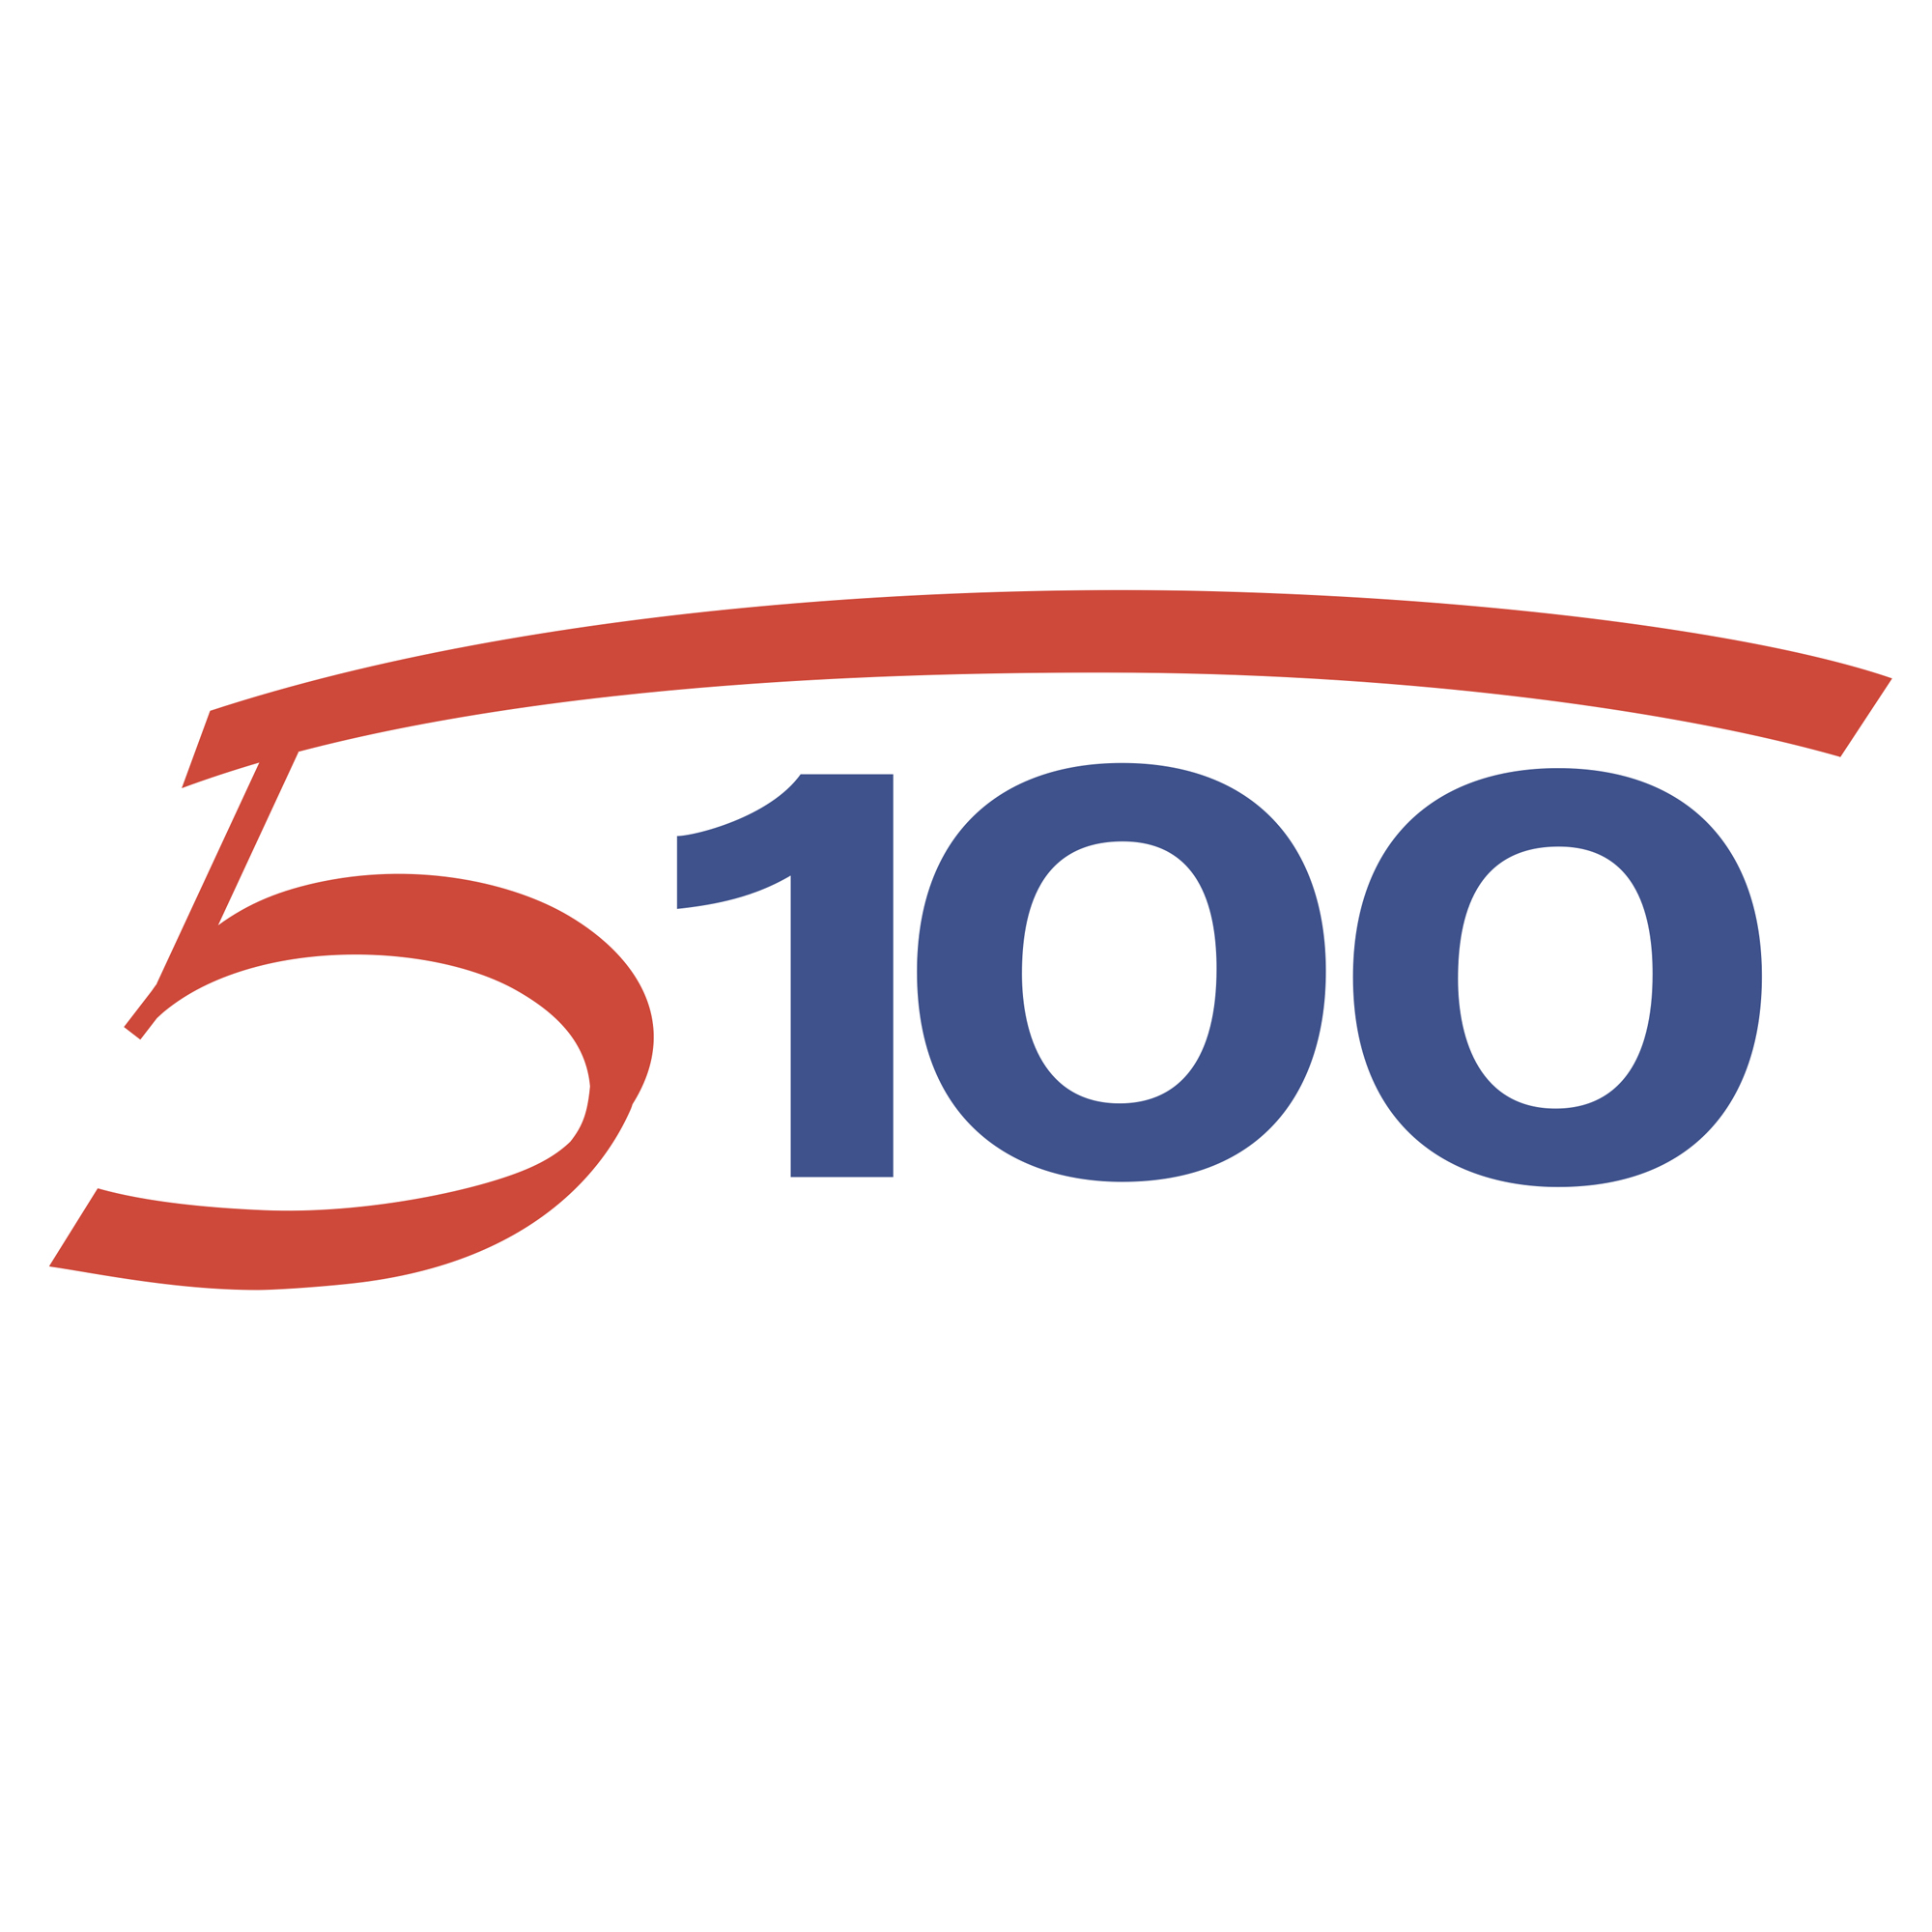 5-100 Program Logo